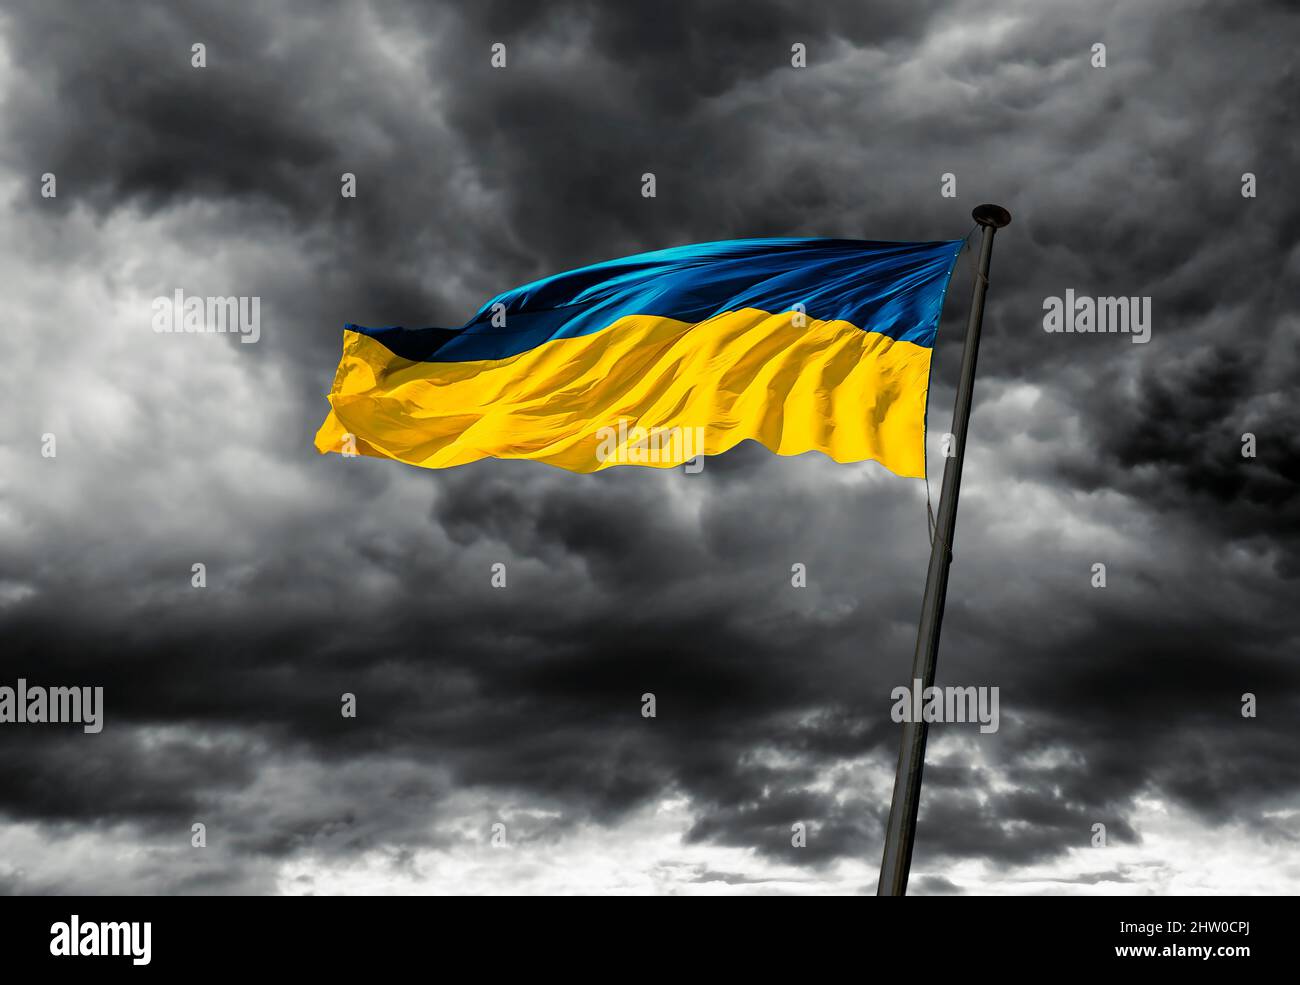 Una bandera ucraniana se aletea en el viento contra un cielo nublado y oscuro. Foto de stock